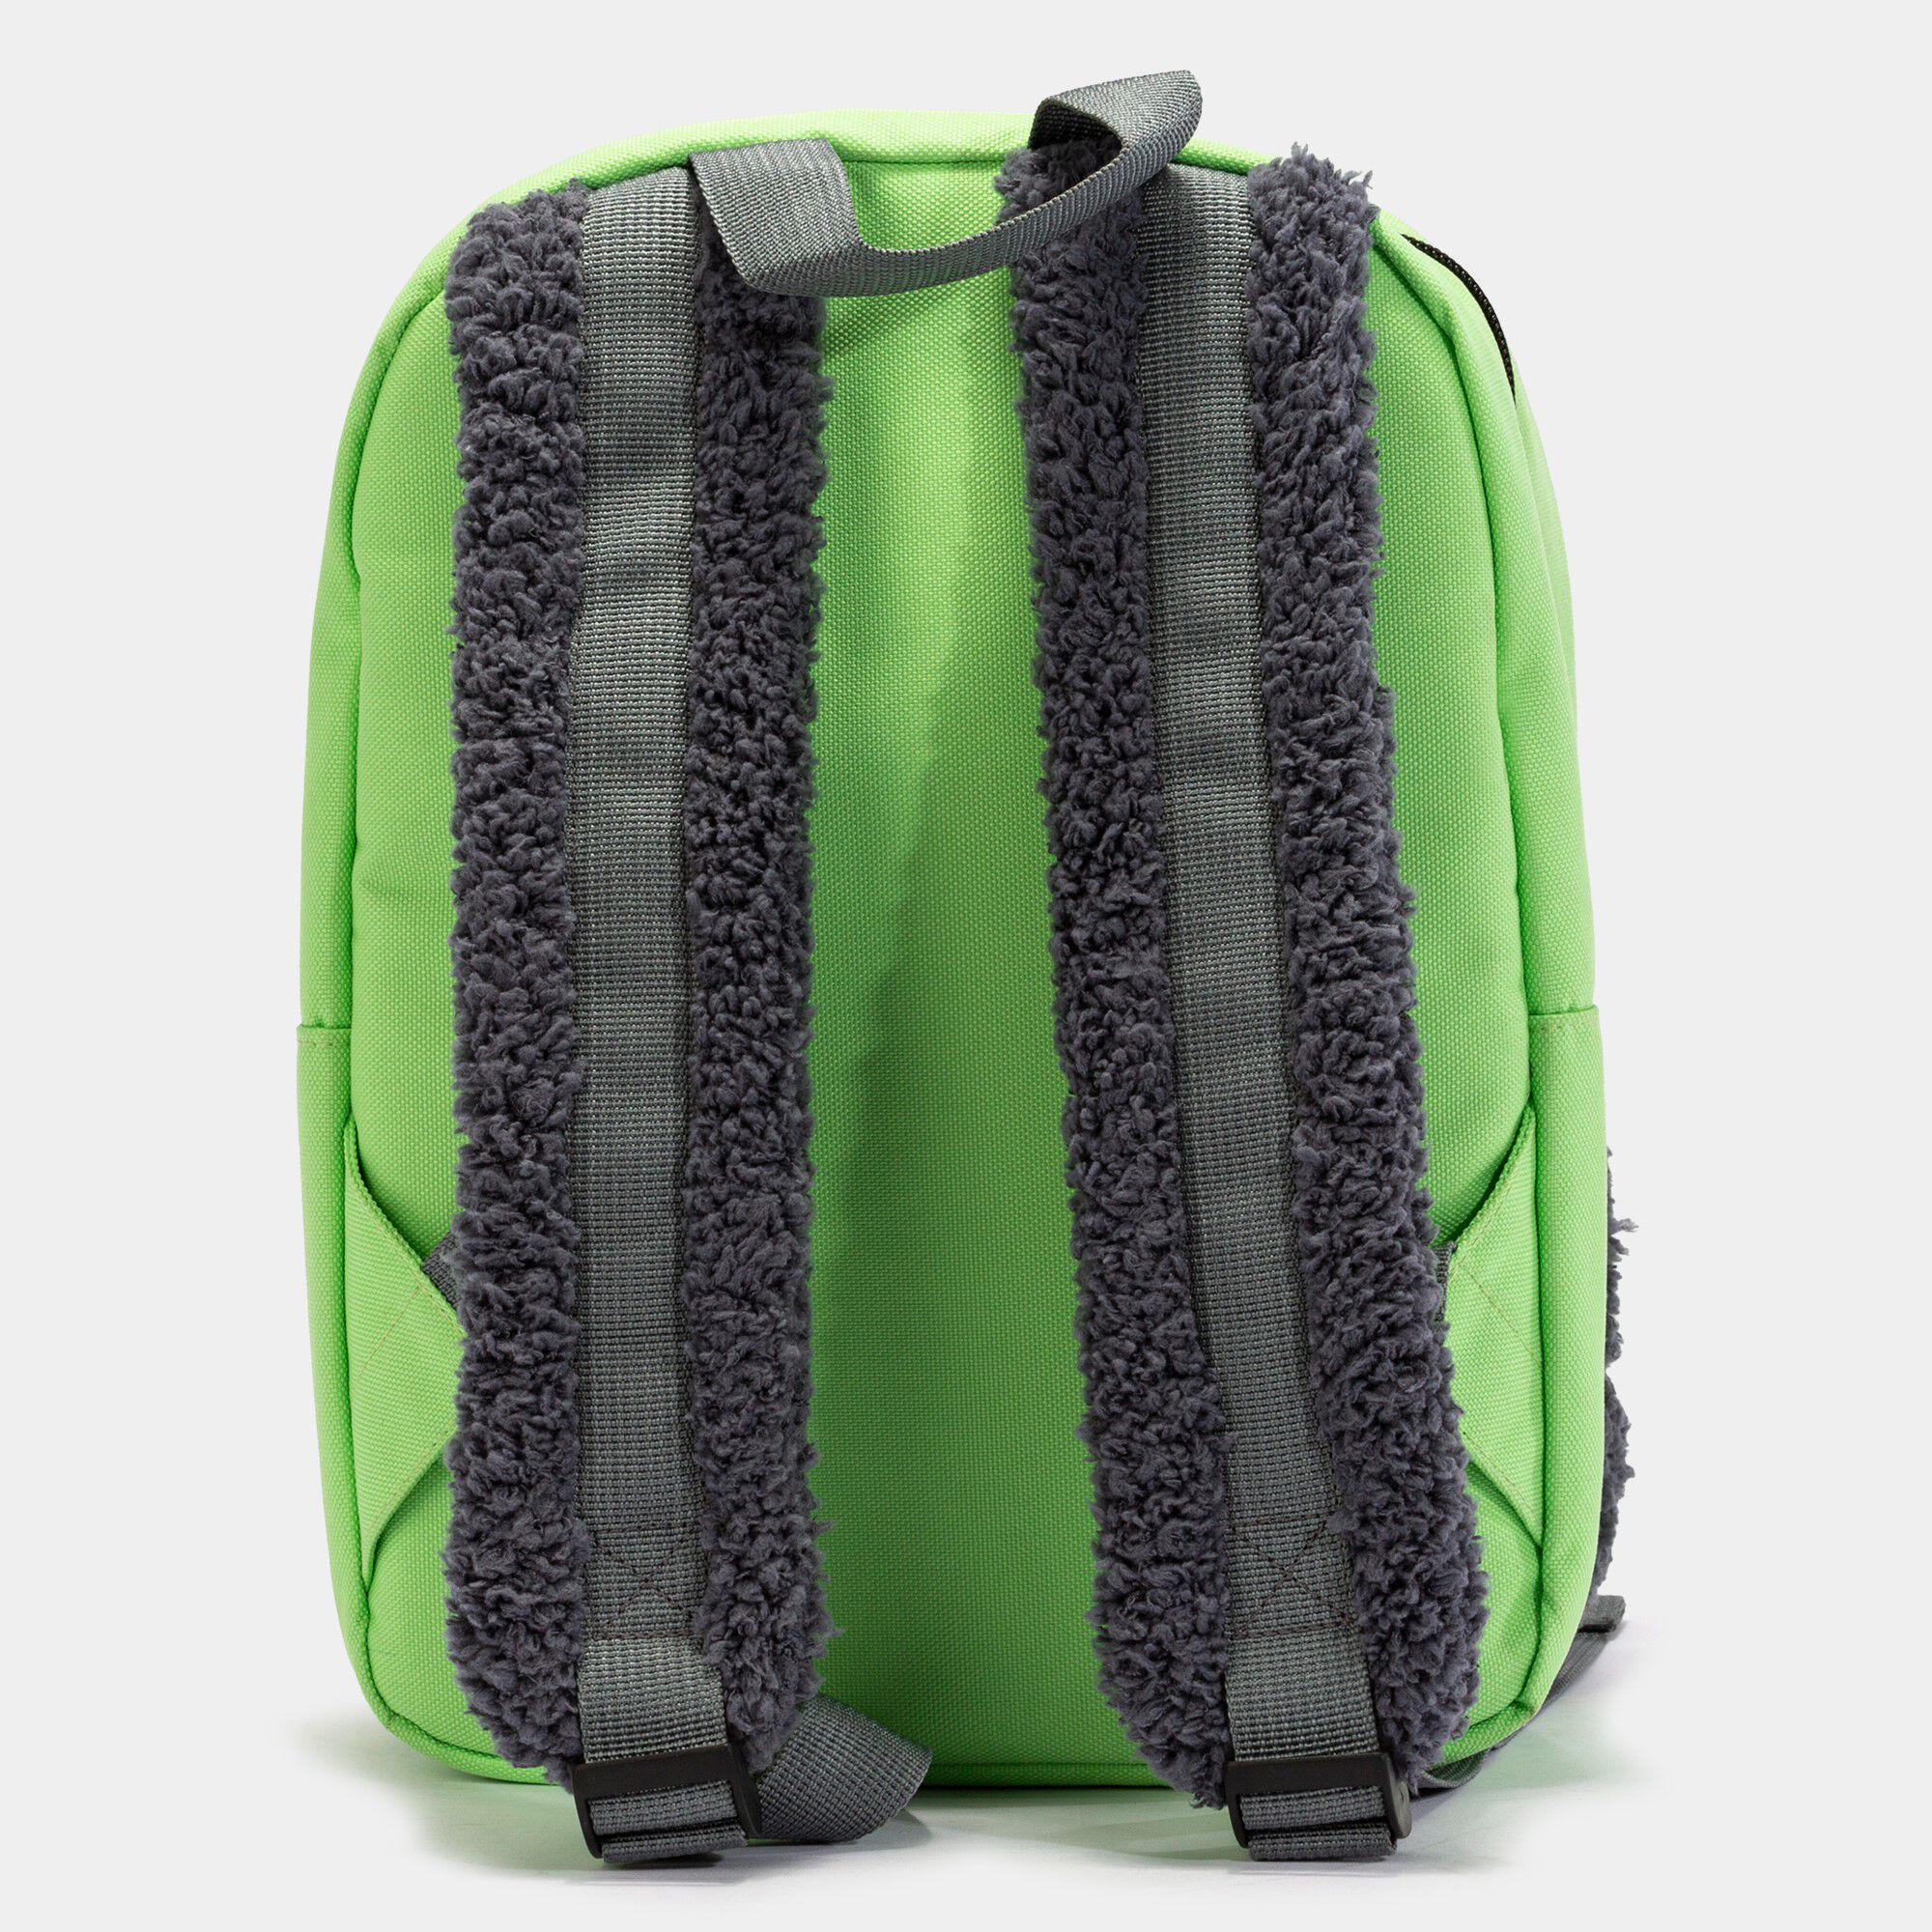 Plecak Friendly zielony